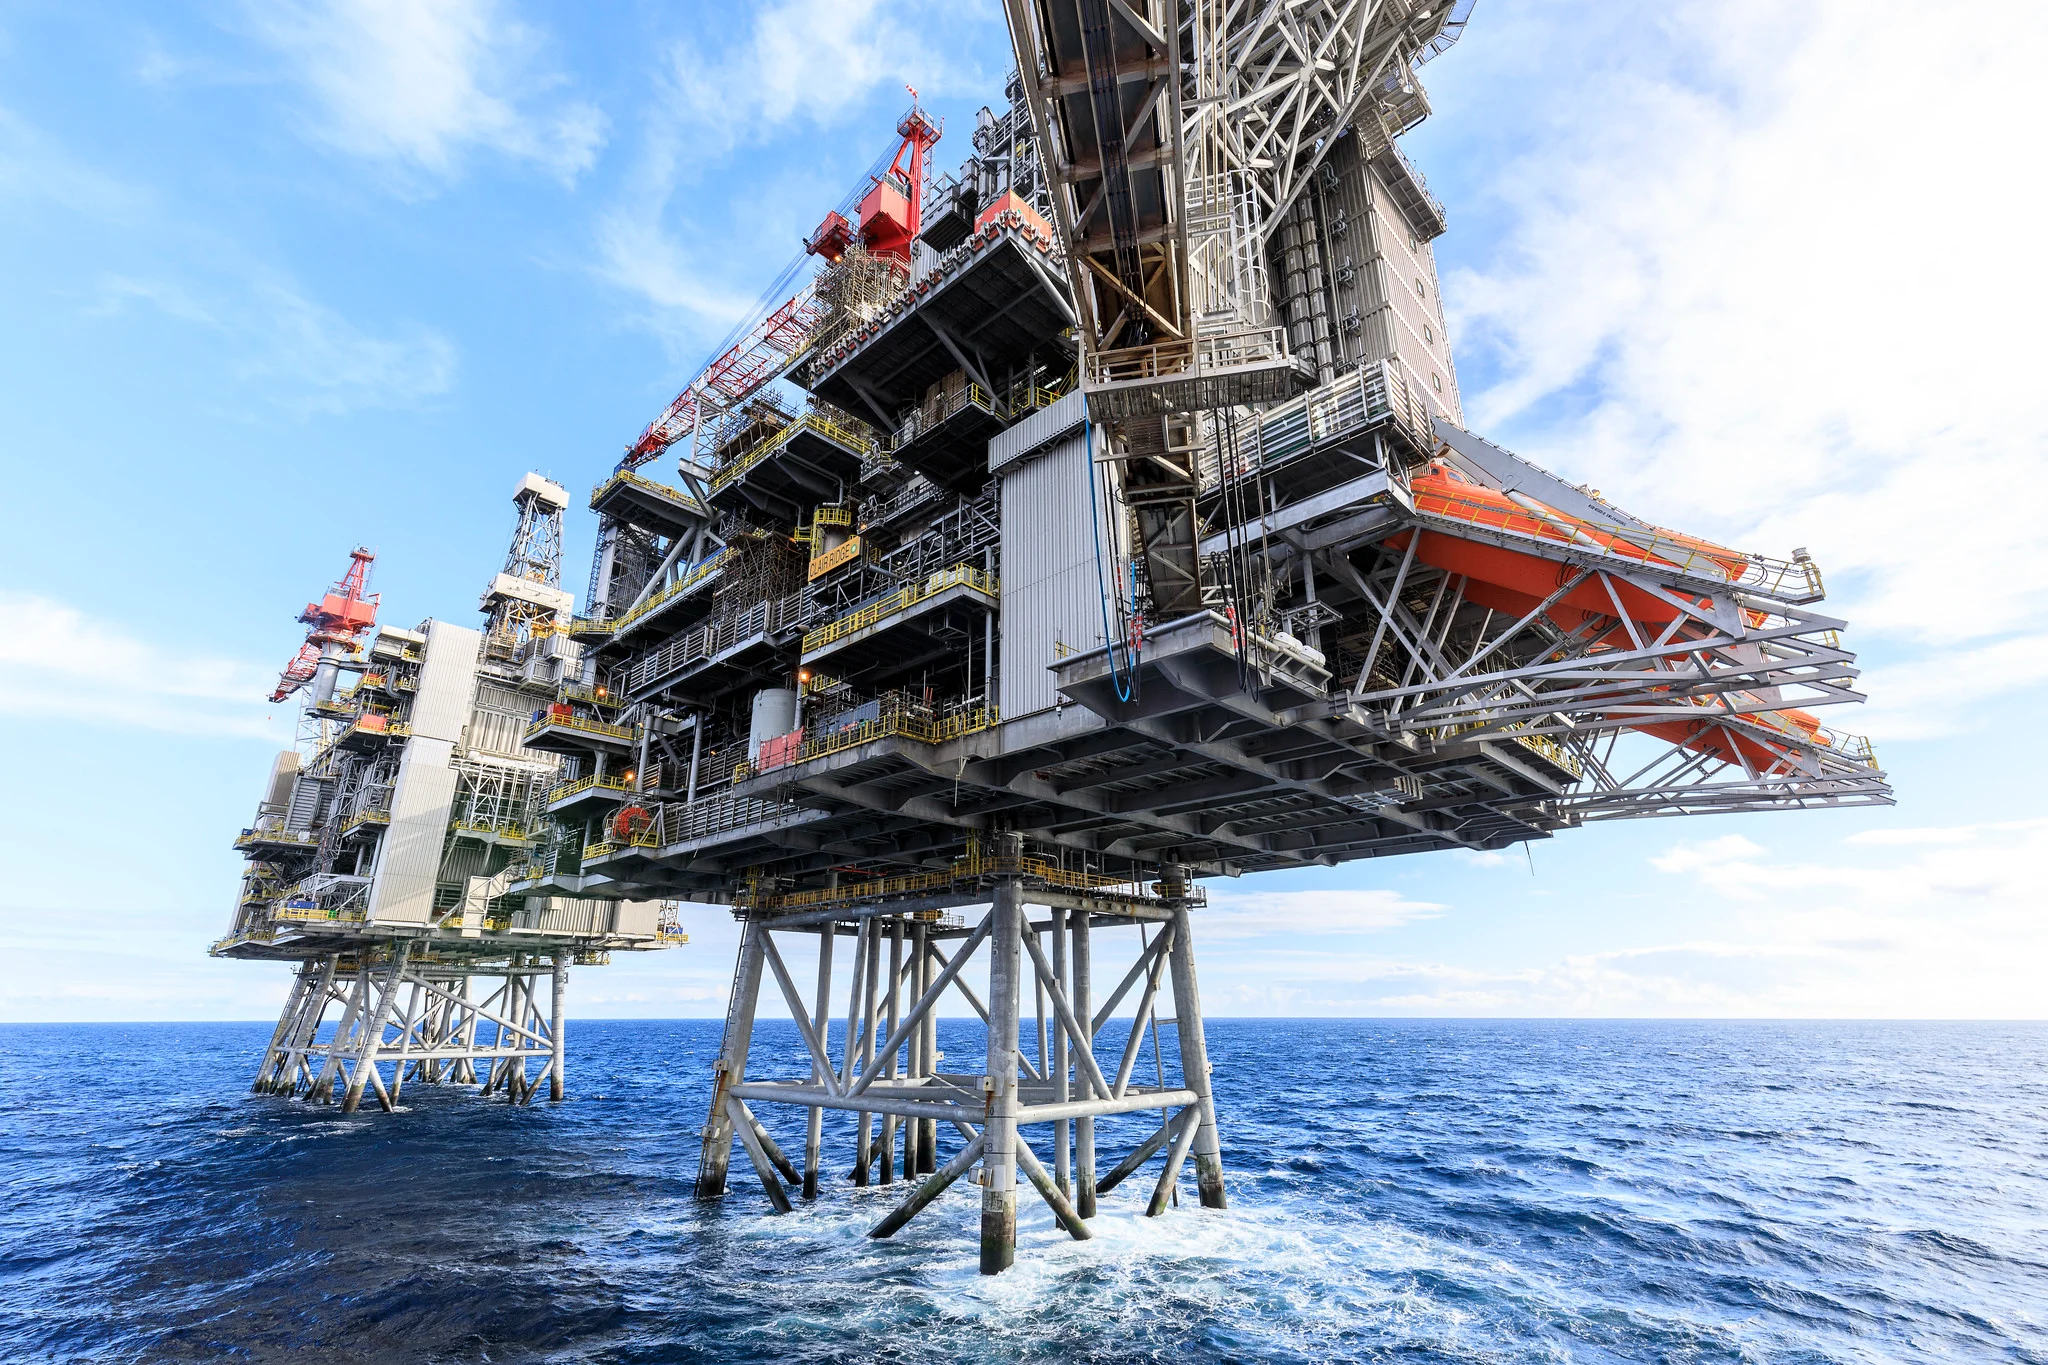 Leilão de petróleo no Golfo do México marca retomada do interesse das petroleiras com a concessão de 311 blocos. Na imagem: Estruturas metálicas de plataforma da bp no Golfo do México, com mar e céu azuis (Foto: Divulgação)